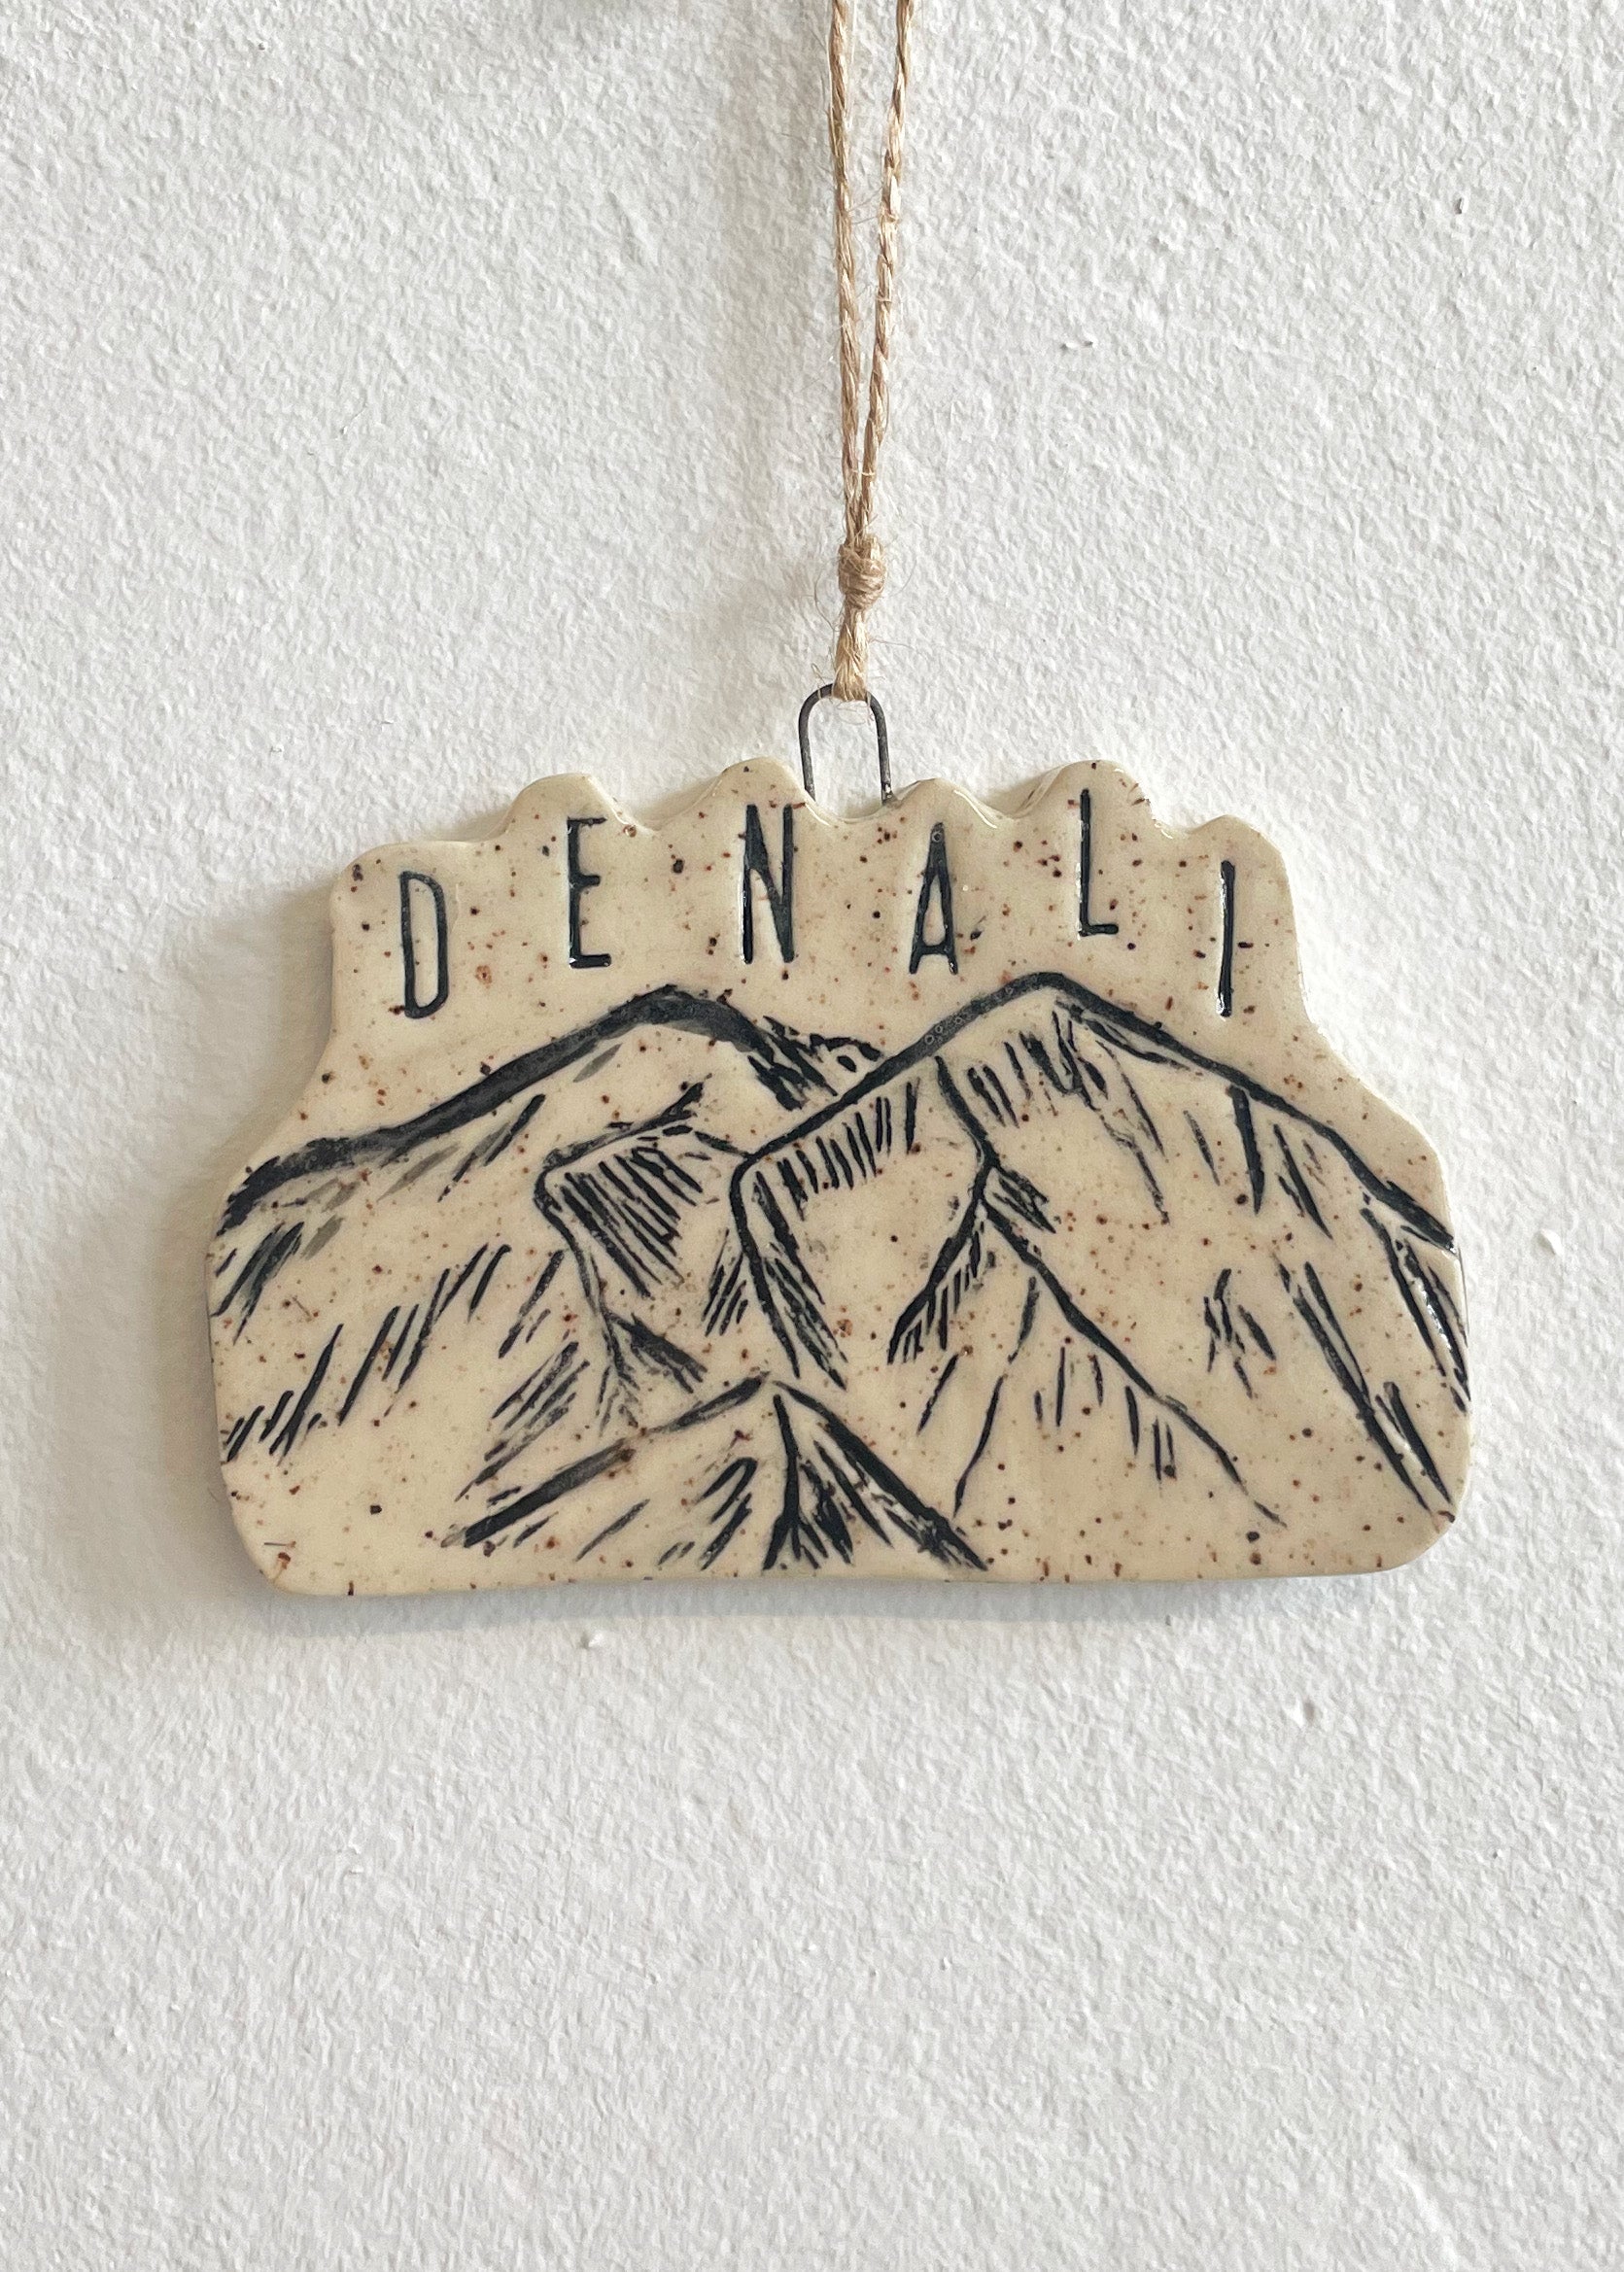 Denali Ornament, No 1